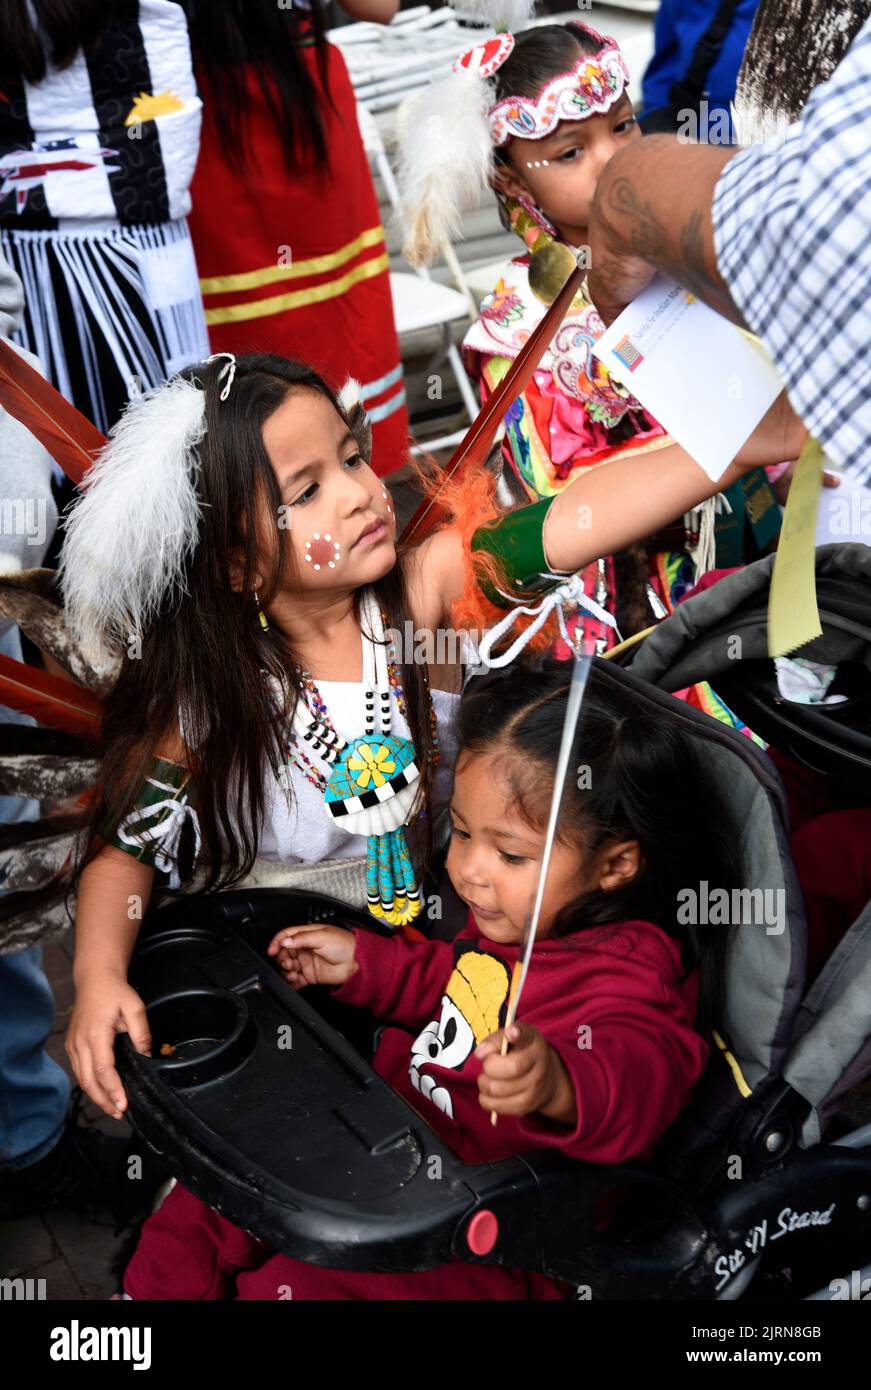 Les enfants autochtones américains se préparent à participer au concours de vêtements autochtones américains au marché indien annuel de Santa Fe, au Nouveau-Mexique. Banque D'Images